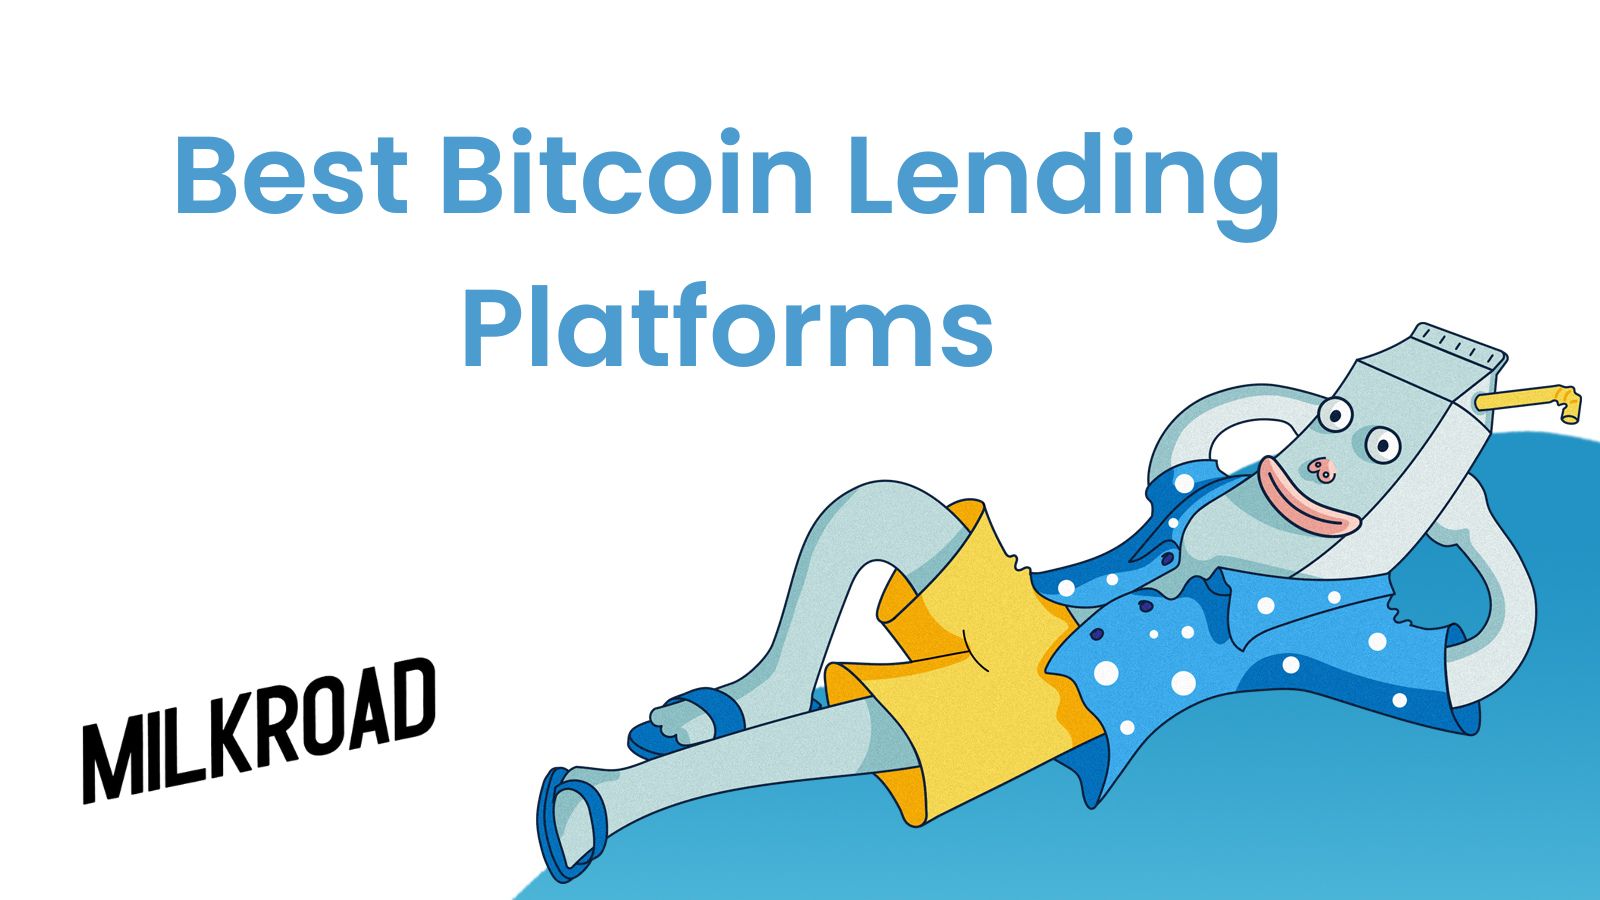 Best Bitcoin Lending Platforms